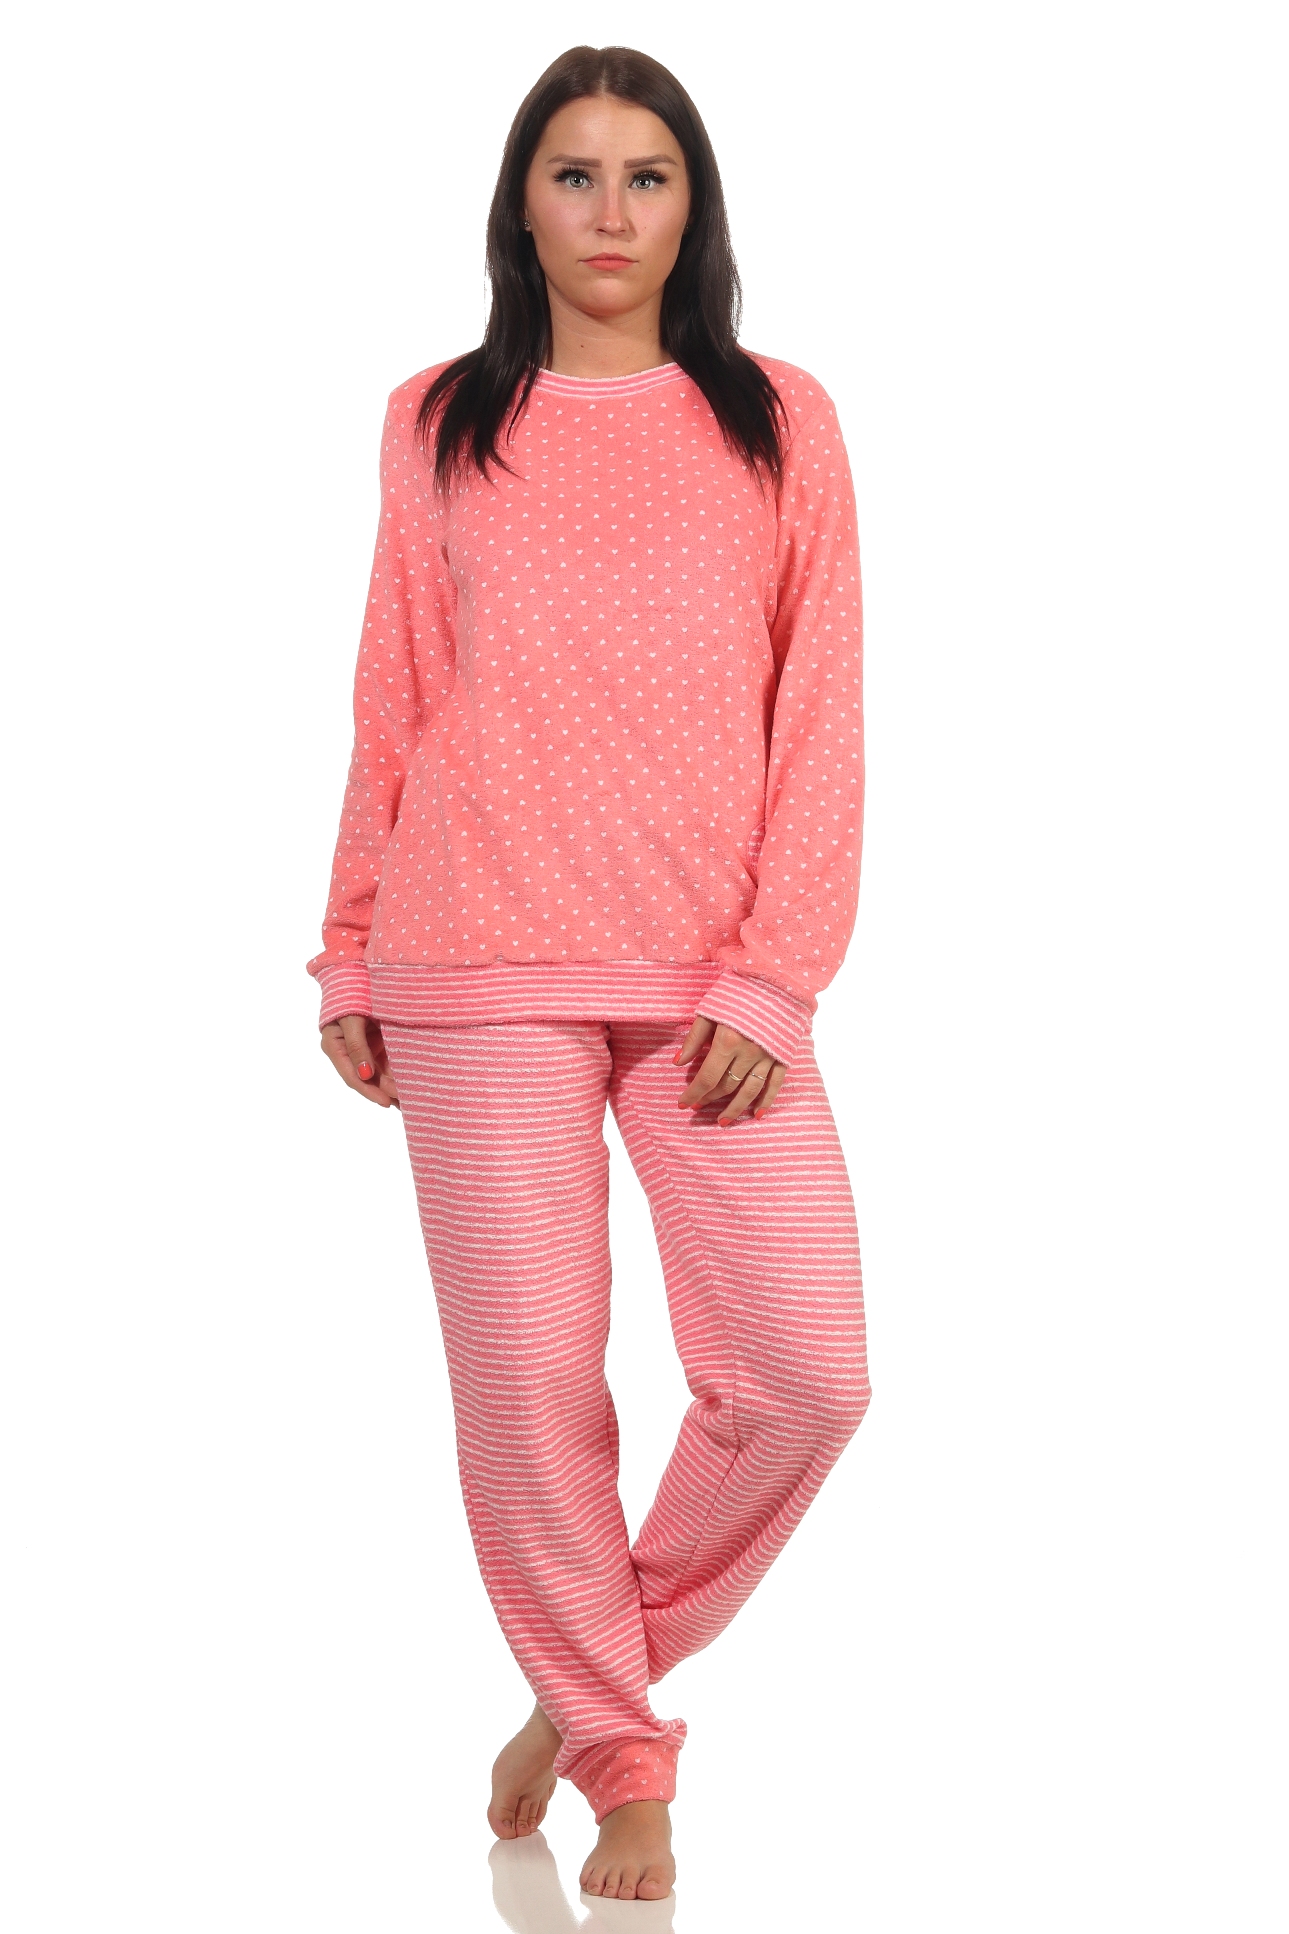 Damen Frottee Pyjama mit Bündchen in Herz-Tupfen Streifenoptik  - auch in Übergrössen